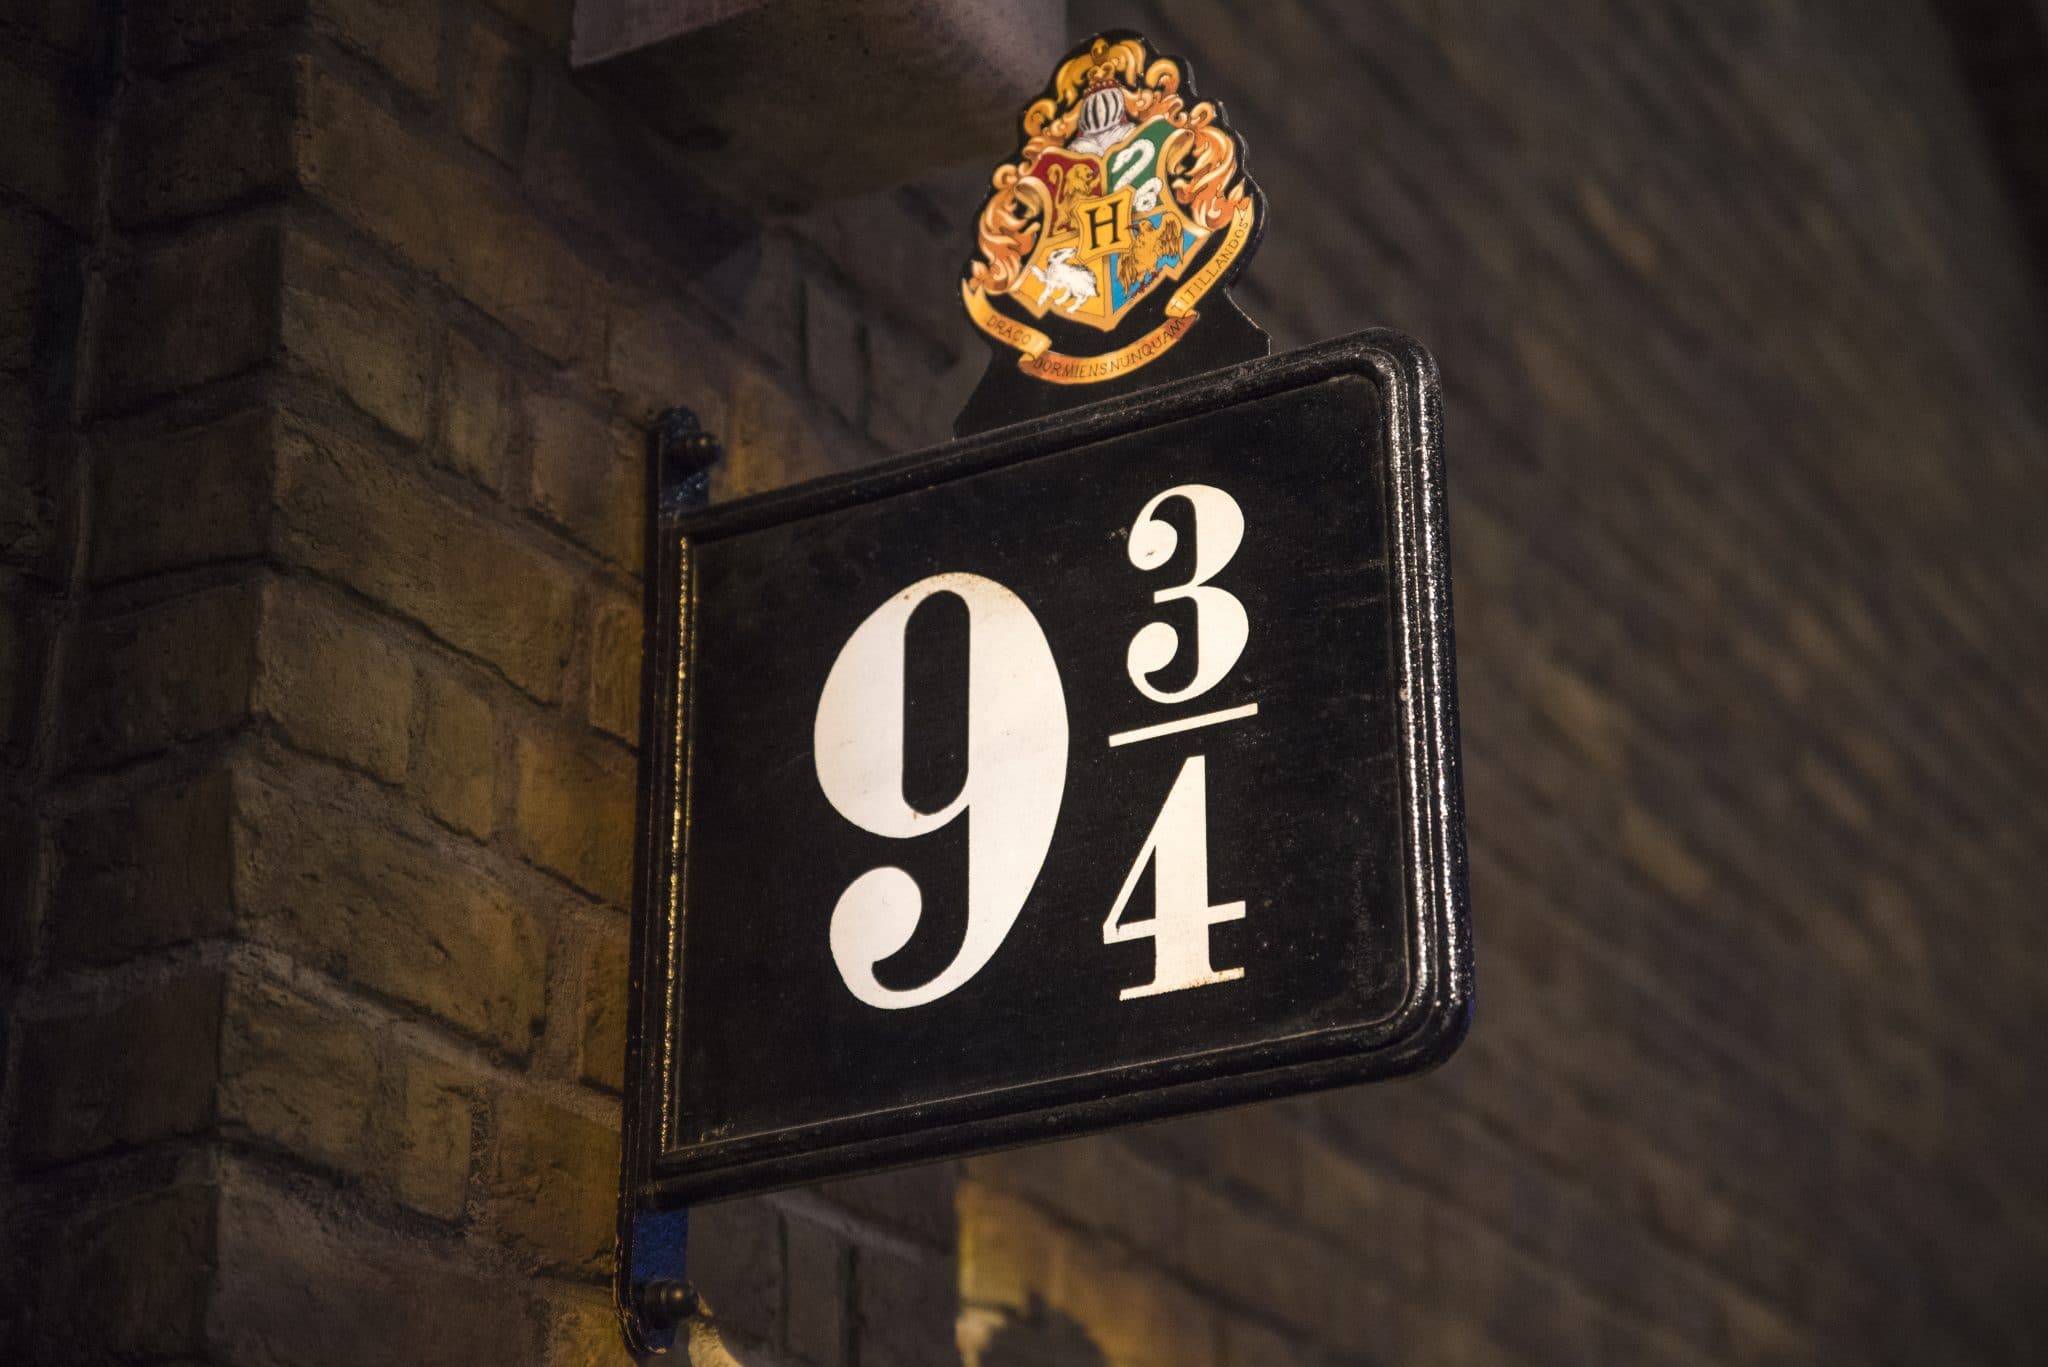 Virtueller Escape Room im "Harry Potter"-Stil begeistert Fans